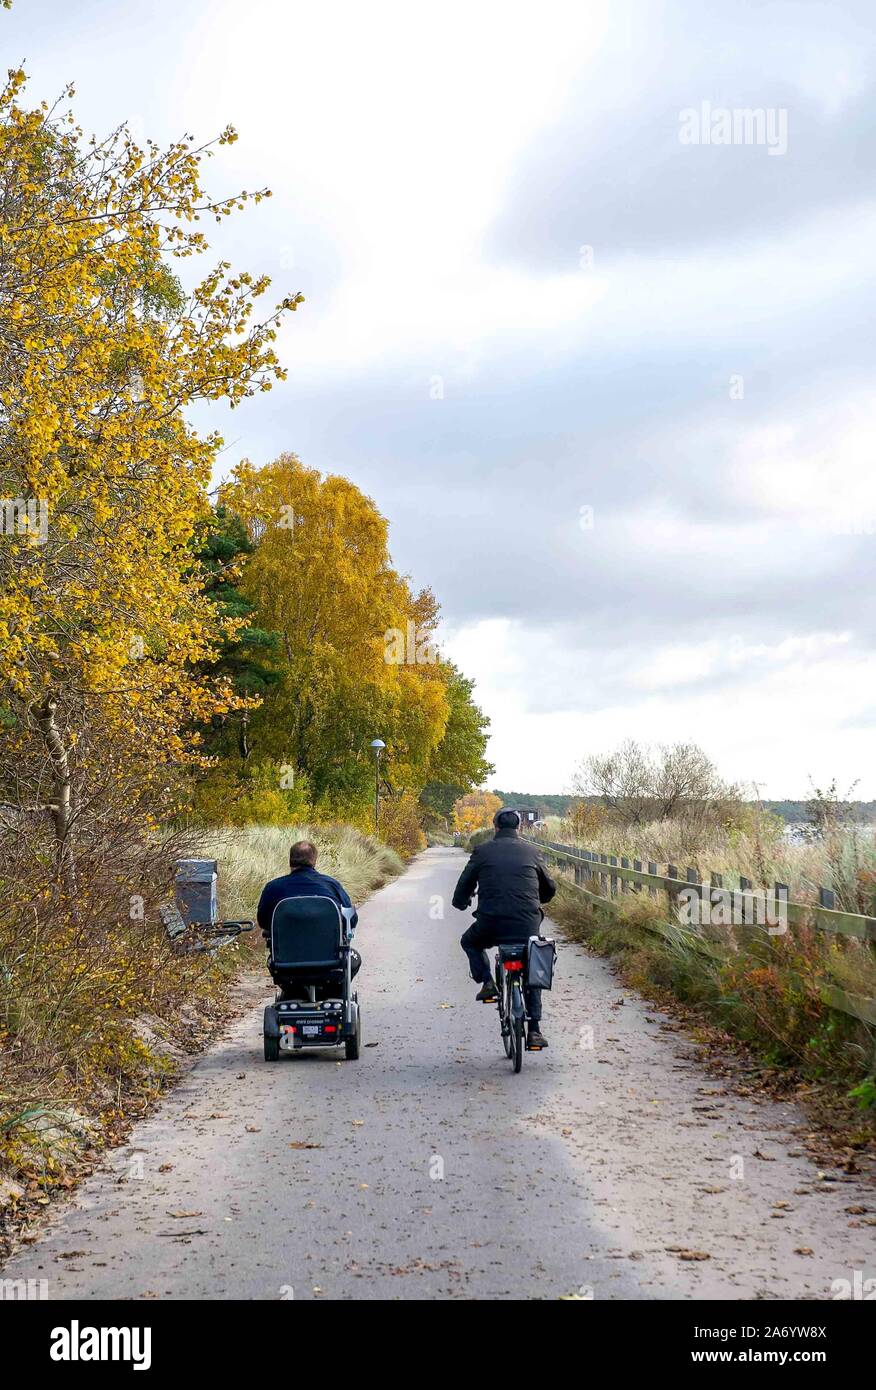 Deux amis rouler côte à côte, l'un sur un vélo et un sur un scooter de mobilité, sur le chemin pavé le long du bord de mer à Ystad, en Suède. Banque D'Images